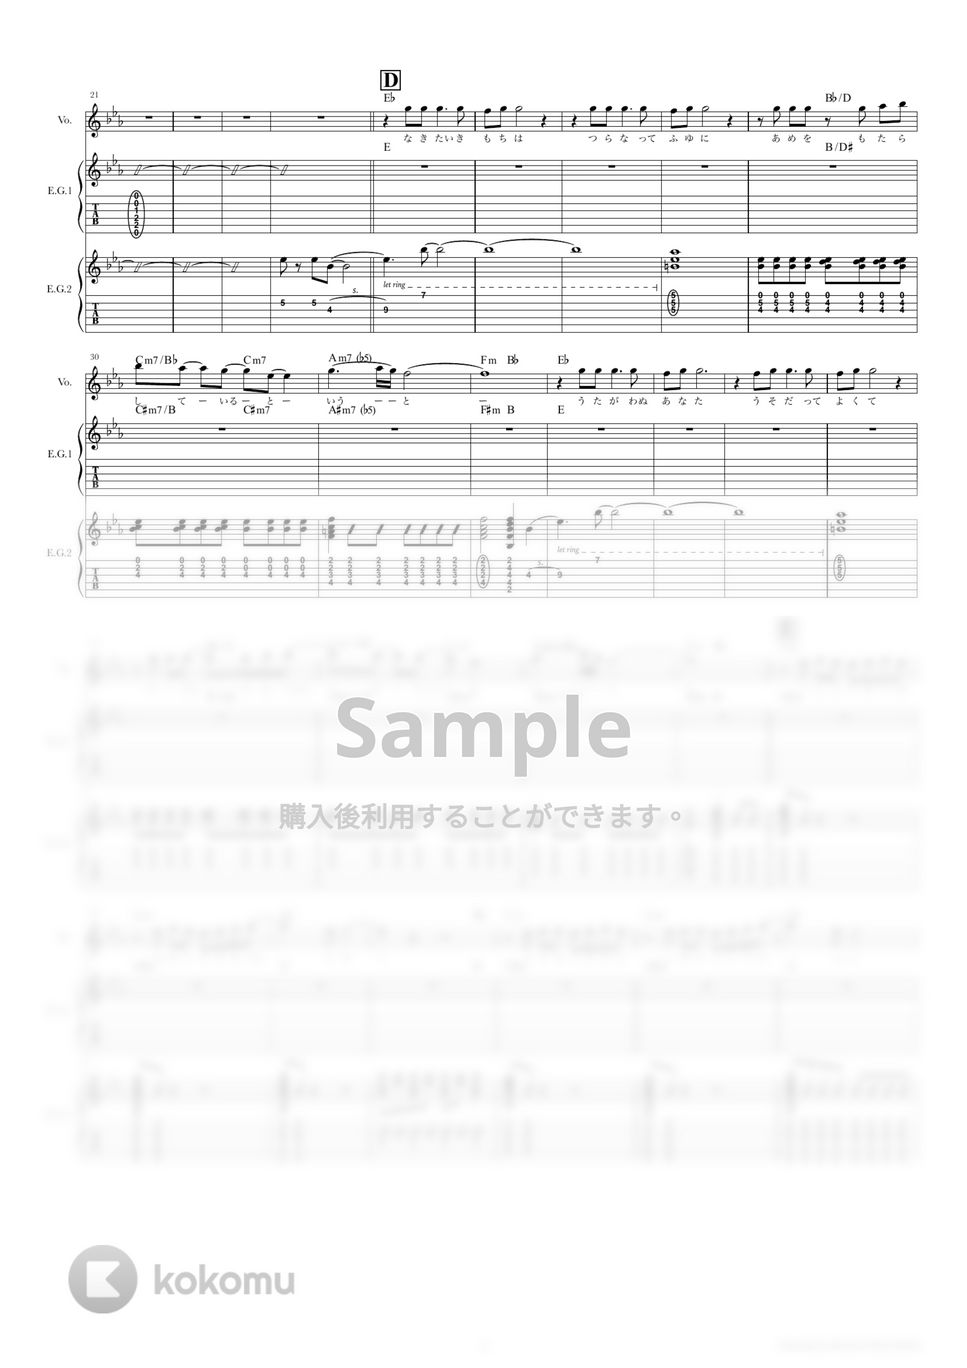 東京事変 - 群青日和 (ギタースコア・歌詞・コード付き) by TRIAD GUITAR SCHOOL